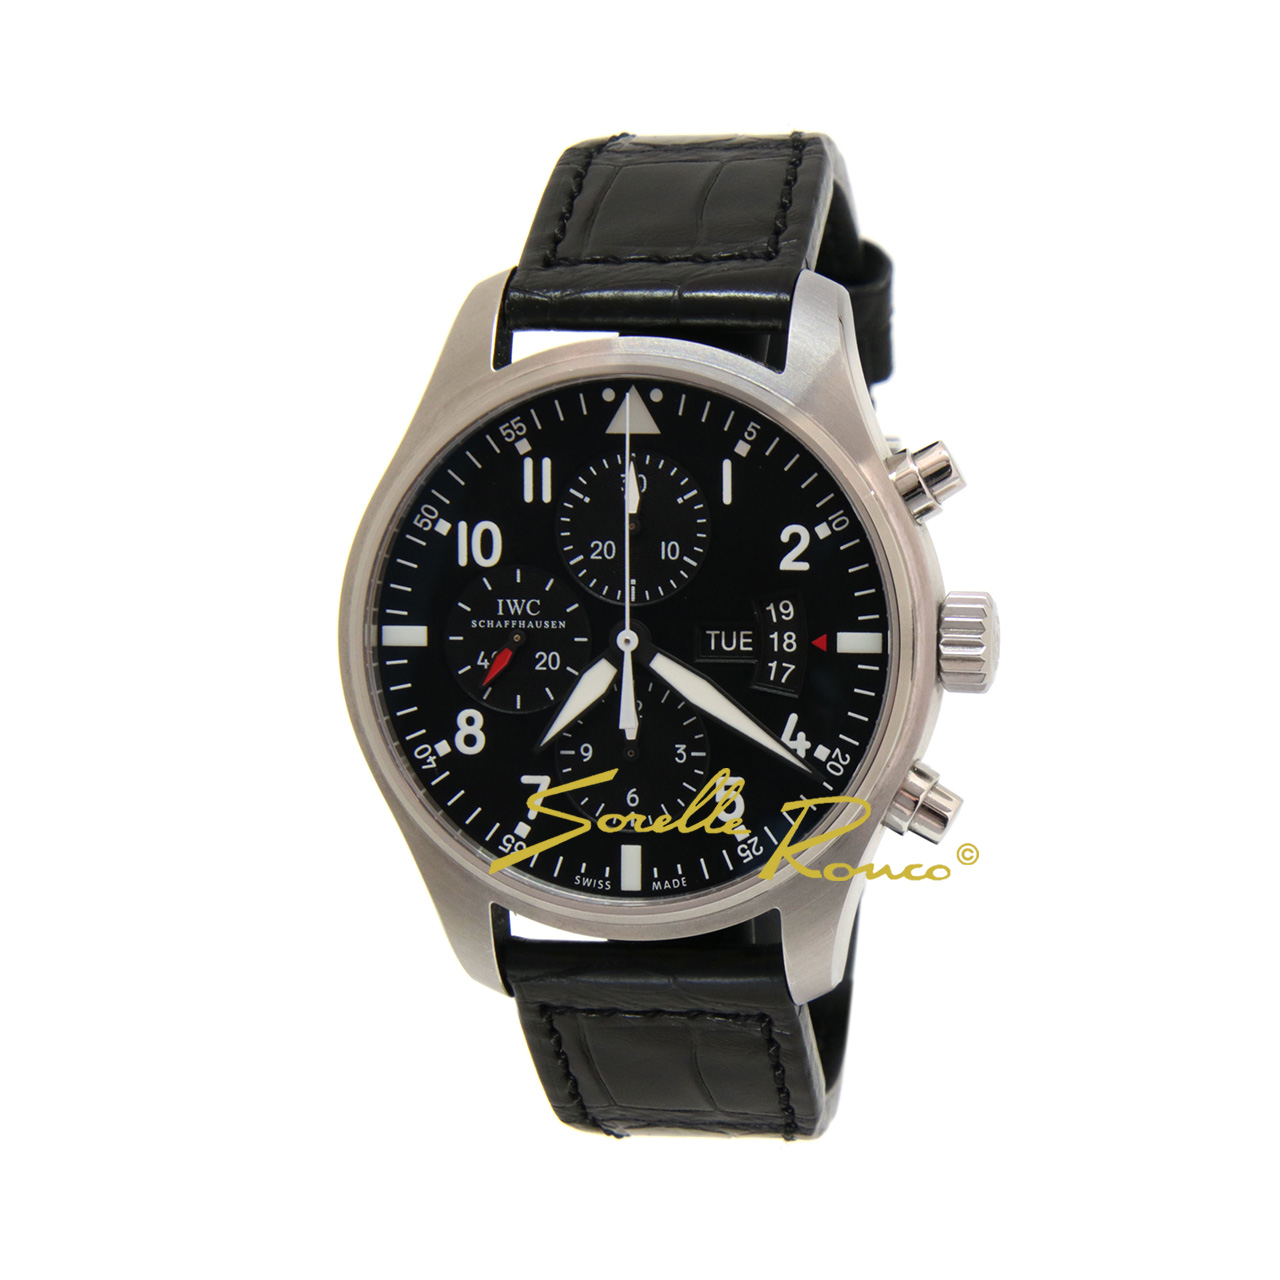 Orologio IWC Pilot's chronograph day-date disponibile con cassa in acciaio, quadrante nero da 43mm e cinturino in pelle nero. Al suo interno batte il calibro IWC 79320 di manifattura che garantisce 44 ore di autonomia di marcia.